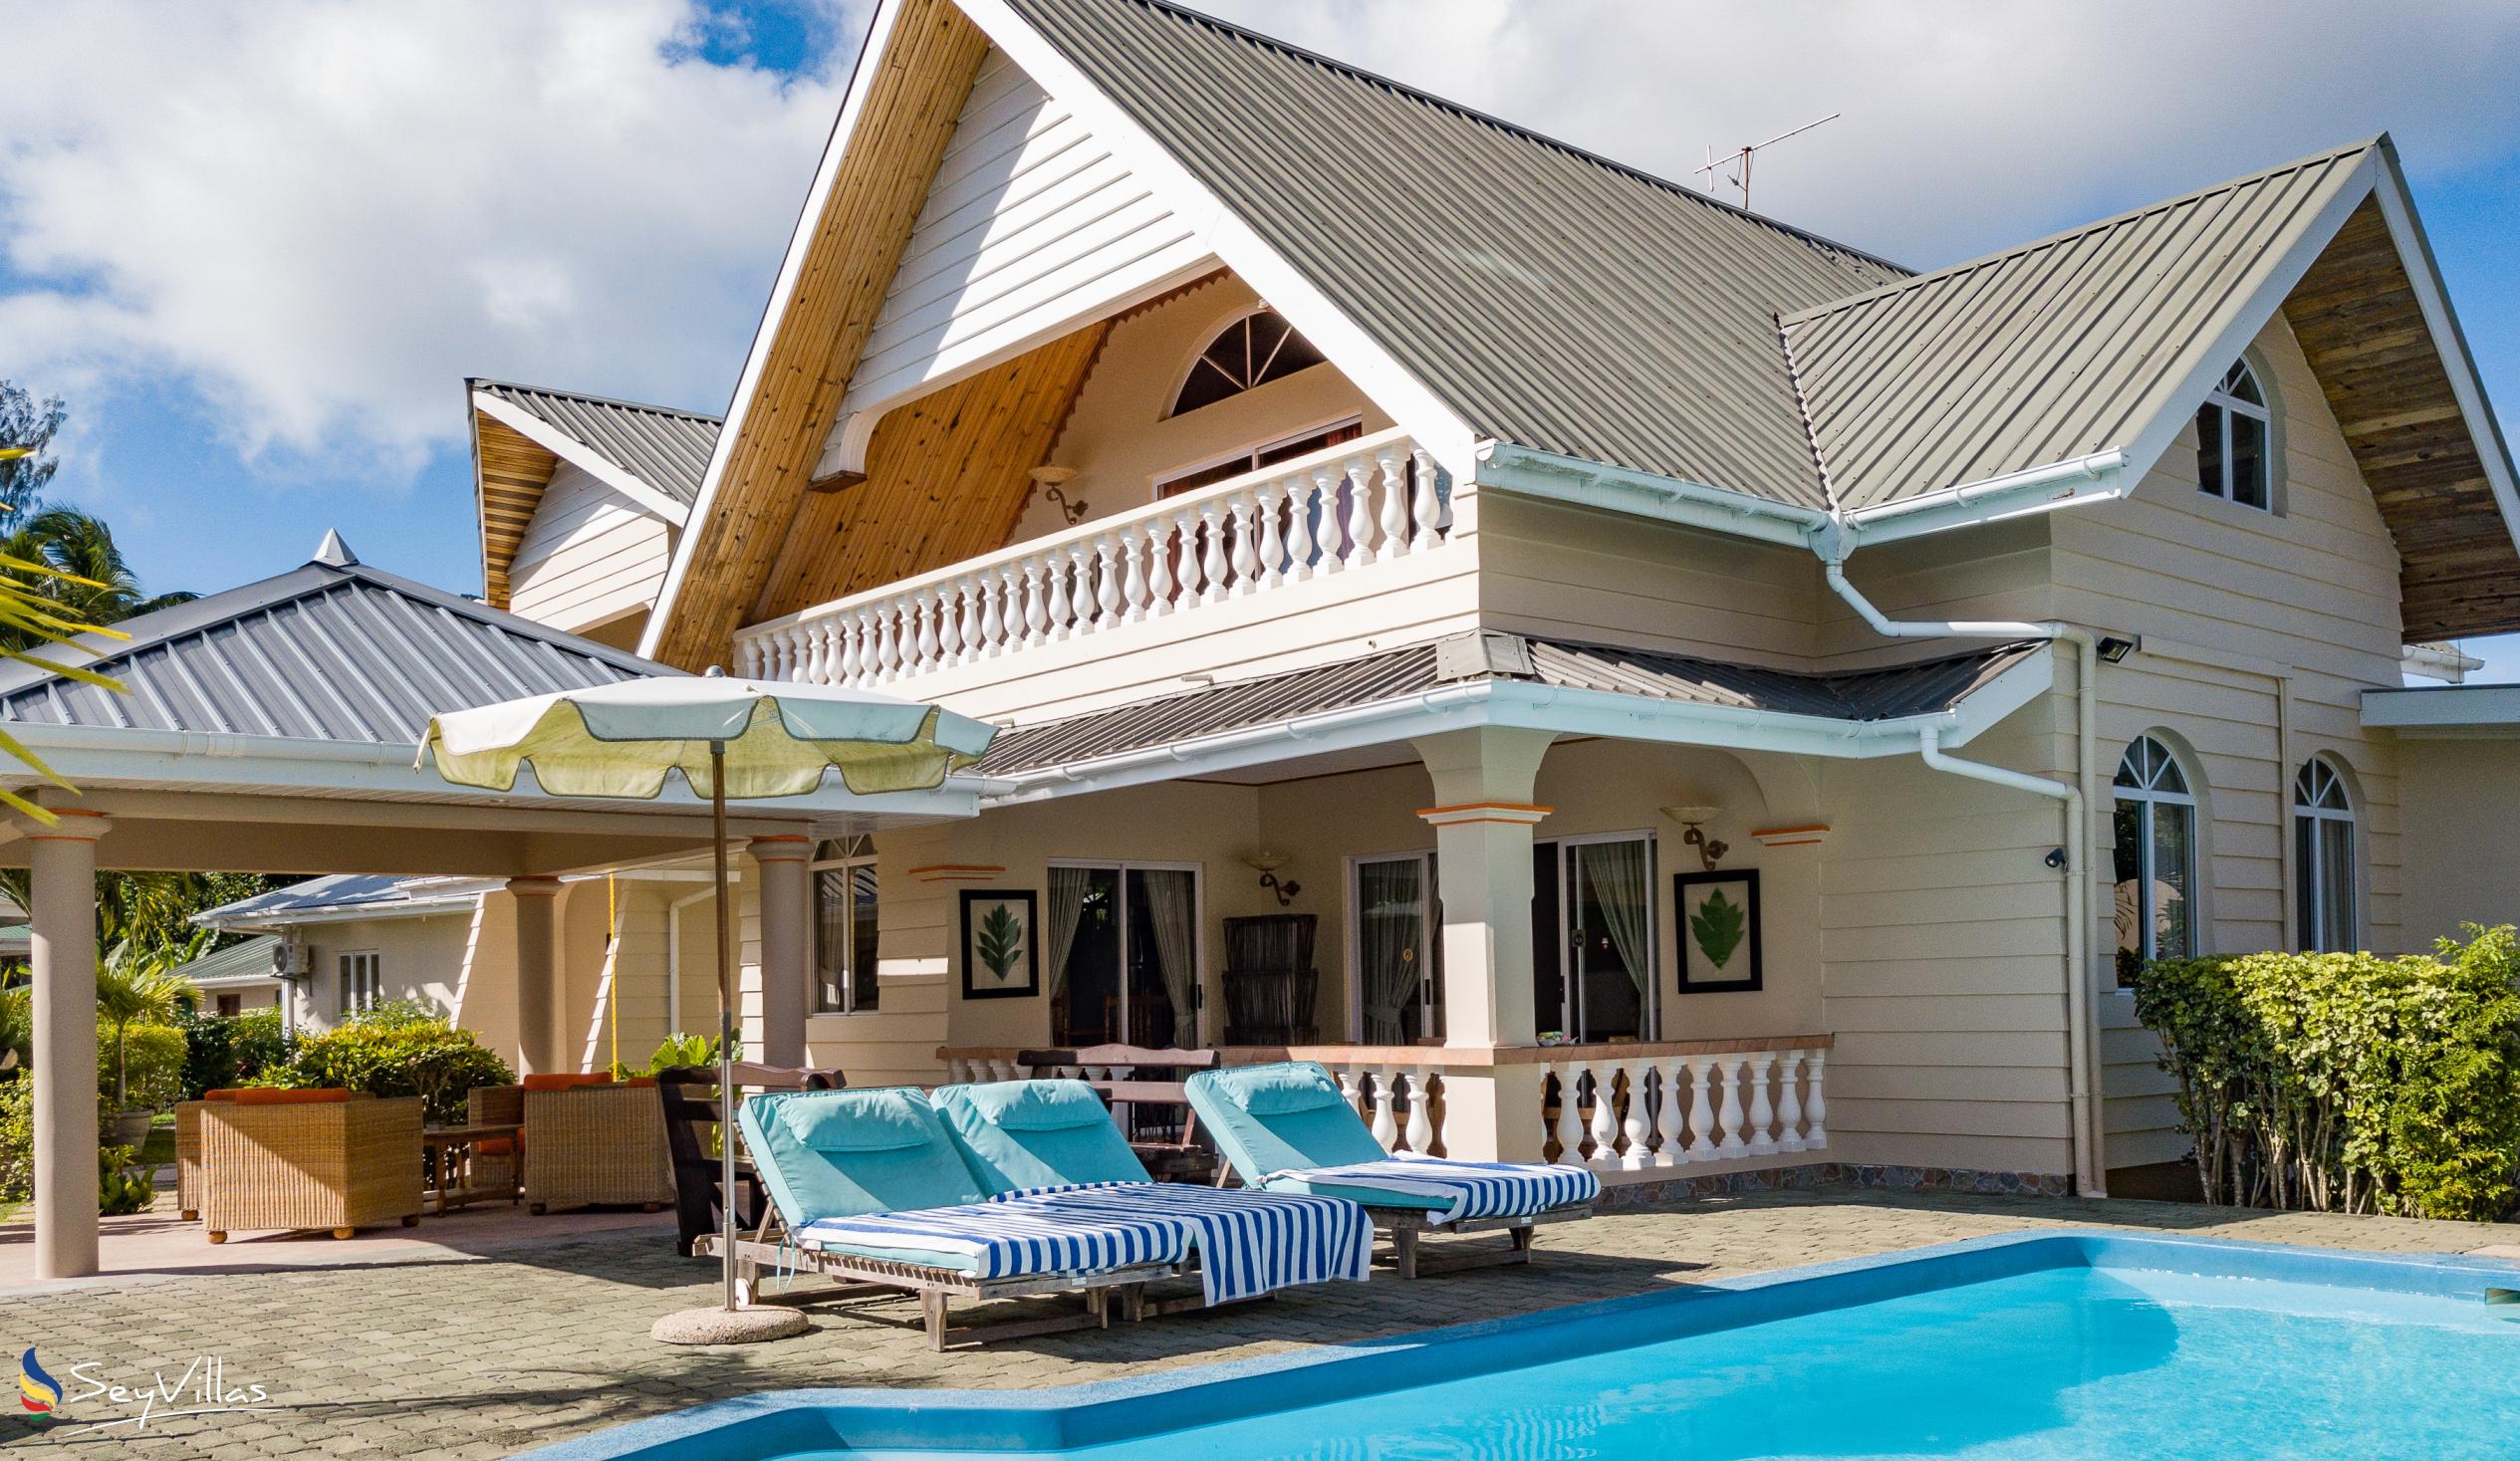 Foto 20: Villa Aya - Grand Villa - Praslin (Seychellen)